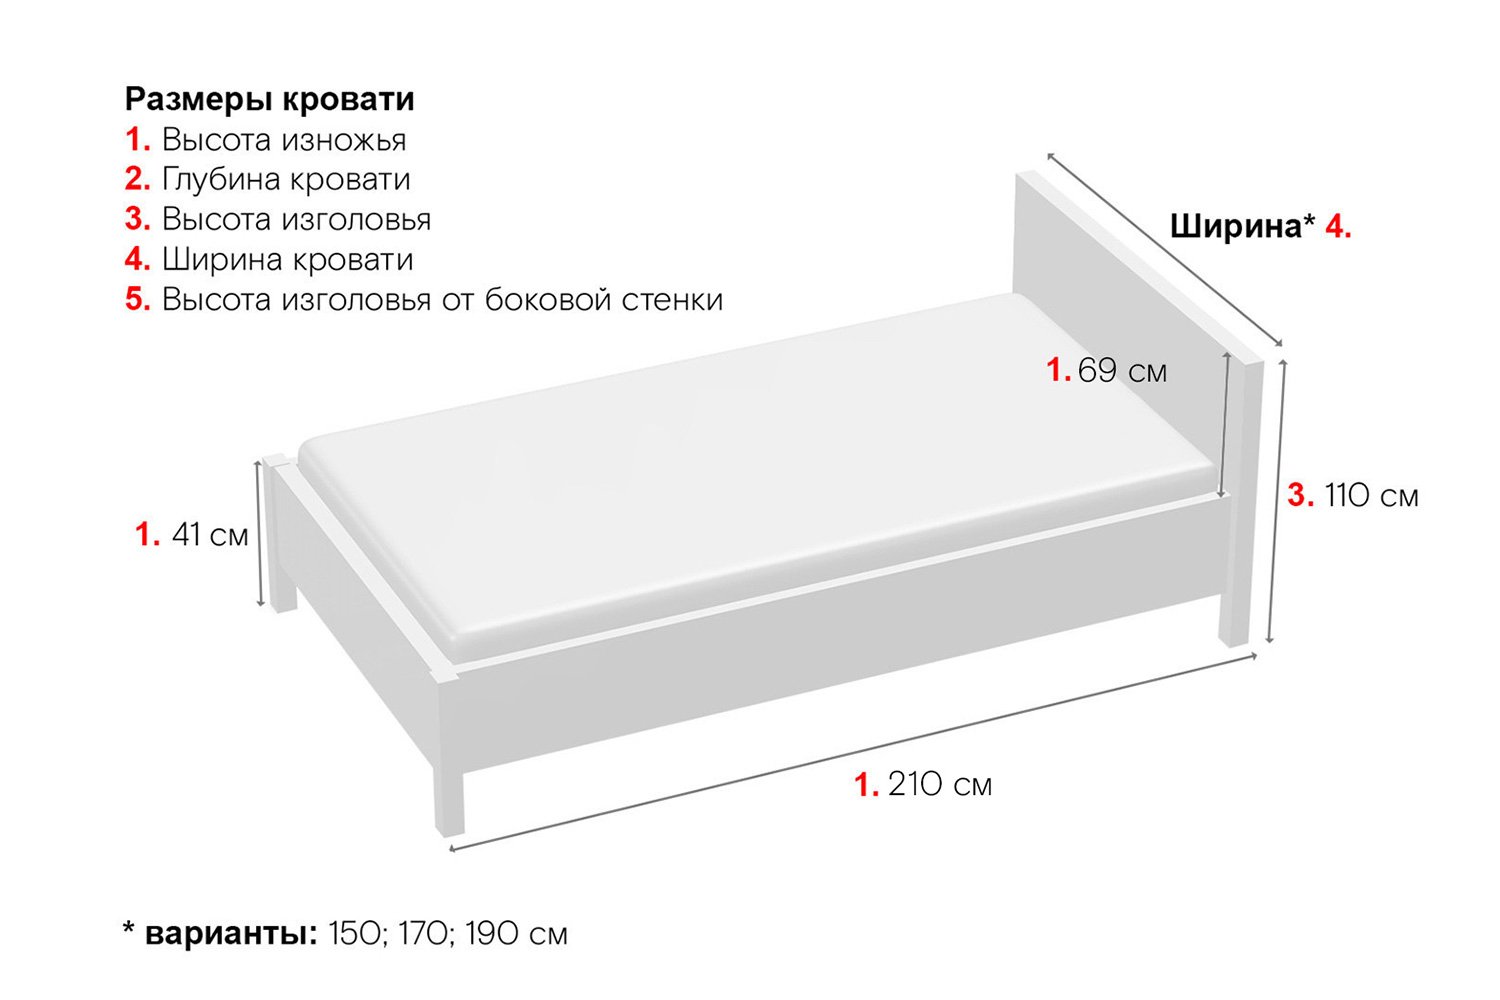 ширина и длина двуспальной кровати стандарт в россии